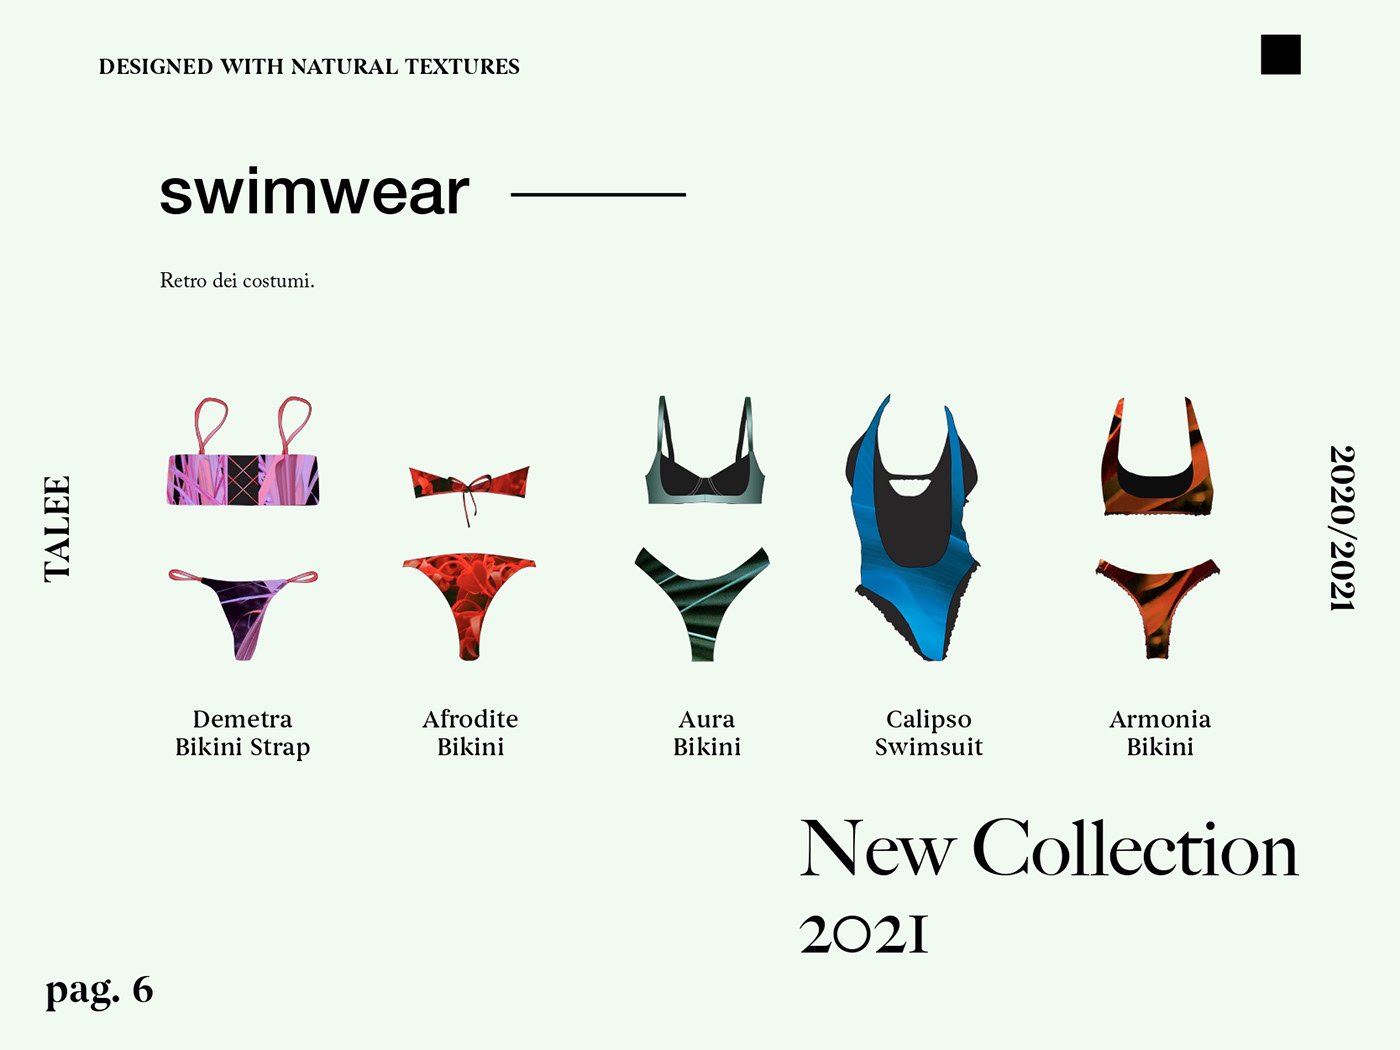 graphicdesign Nature swimwear texture fashiondesign calzedonia